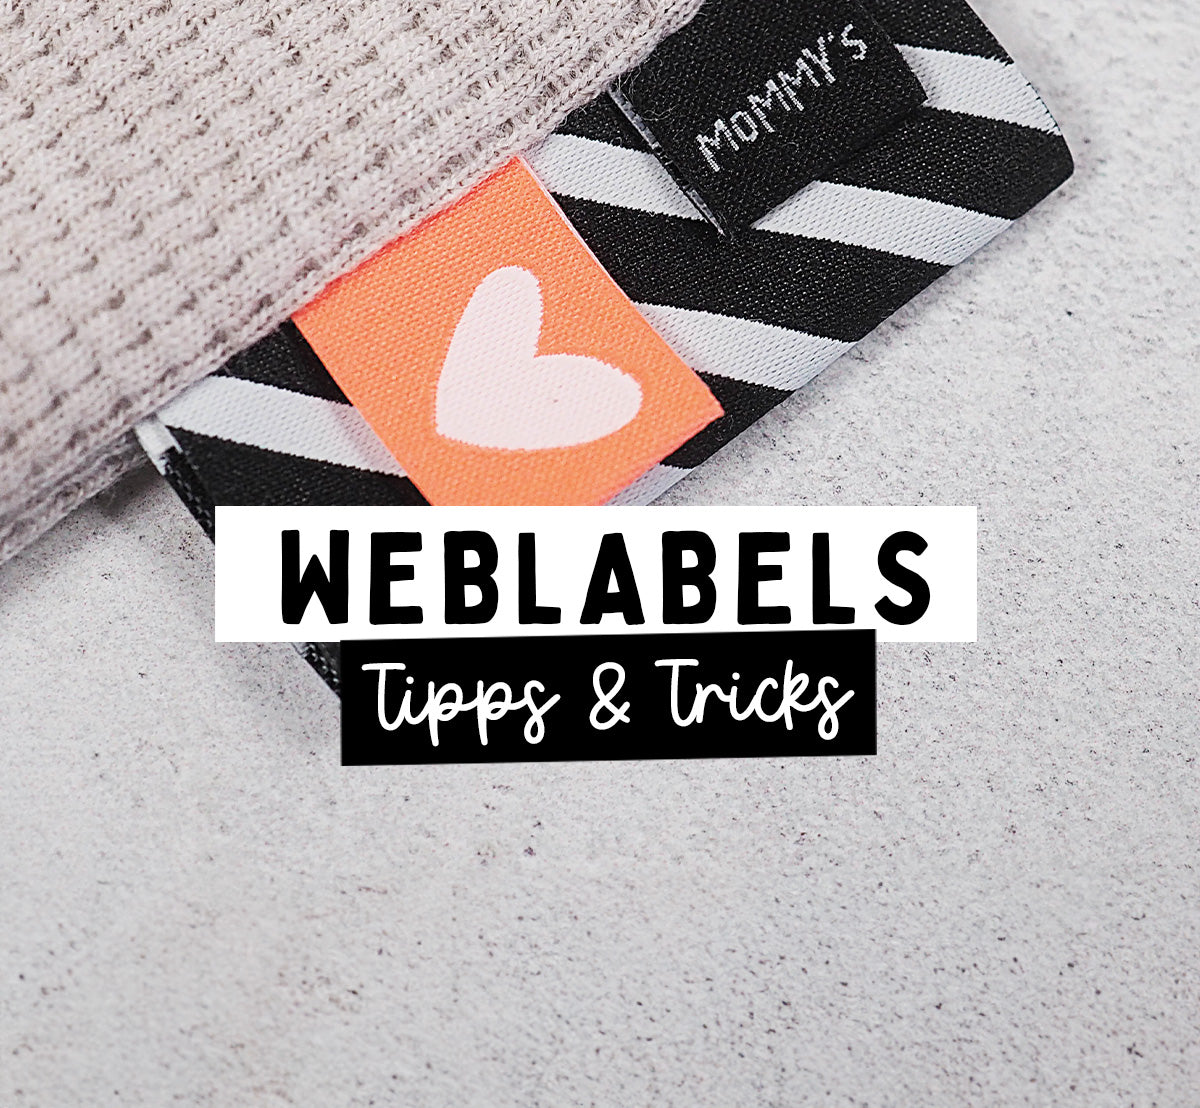 WEBLABELS - TIPPS & TRICKS